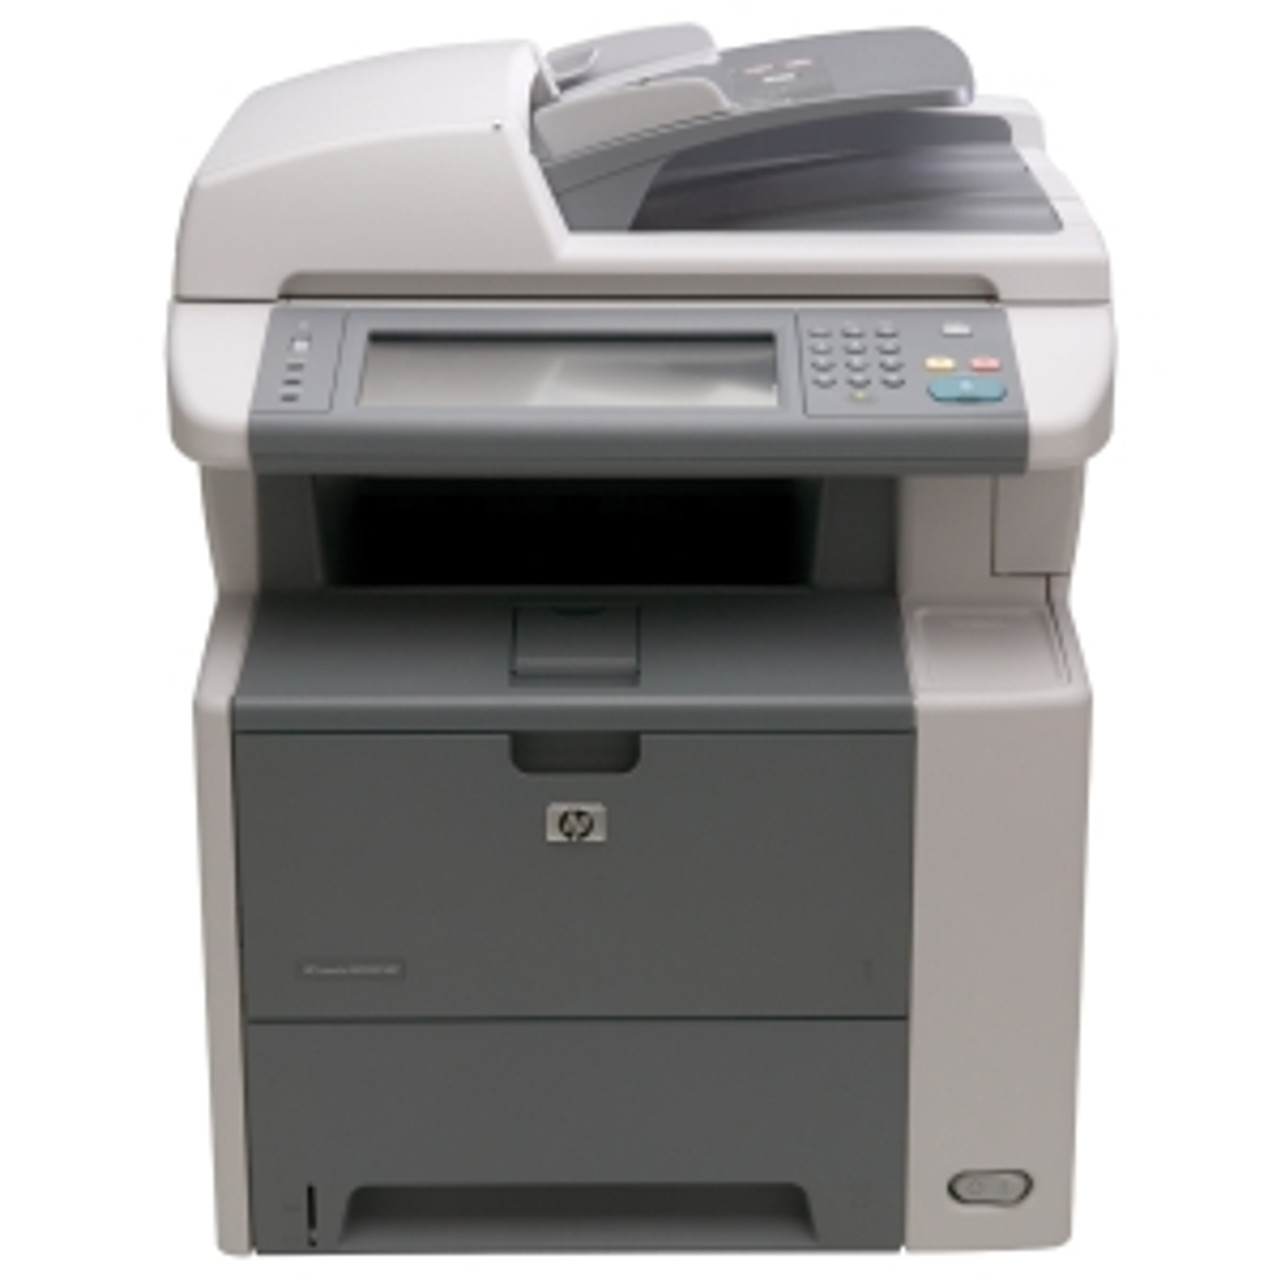 CC476A - HP LaserJet M3035 Laser Multifunction Printer Monochrome Plain Paper Print Desktop Copier/Printer/Scanner 35 ppm Mono Print 1200 x 1200 dpi Print 35 cpm Mono Copy 600 dpi Optical Scan Automatic Duplex Print 600 sheets Input Fast Eth